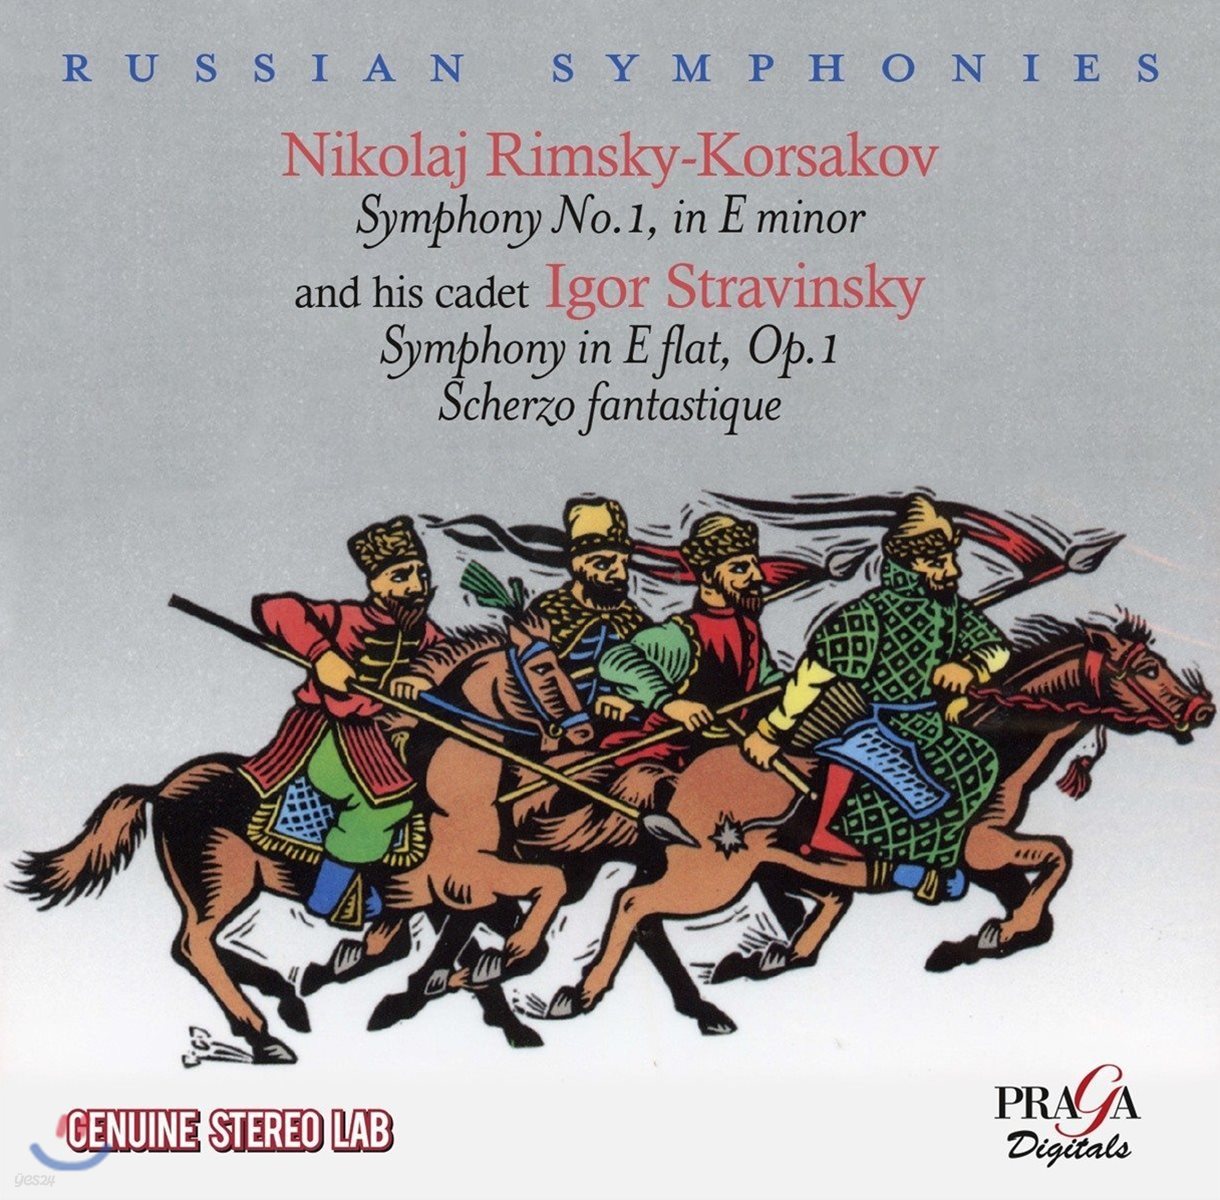 Boris Khaikin 림스키-코르사코프: 교향곡 1번 / 스트라빈스키: 교향곡 Op.1, 환상적 스케르초 Op.3 (Russian Symphonies - Rimsky-Korsakov / Stravinsky)